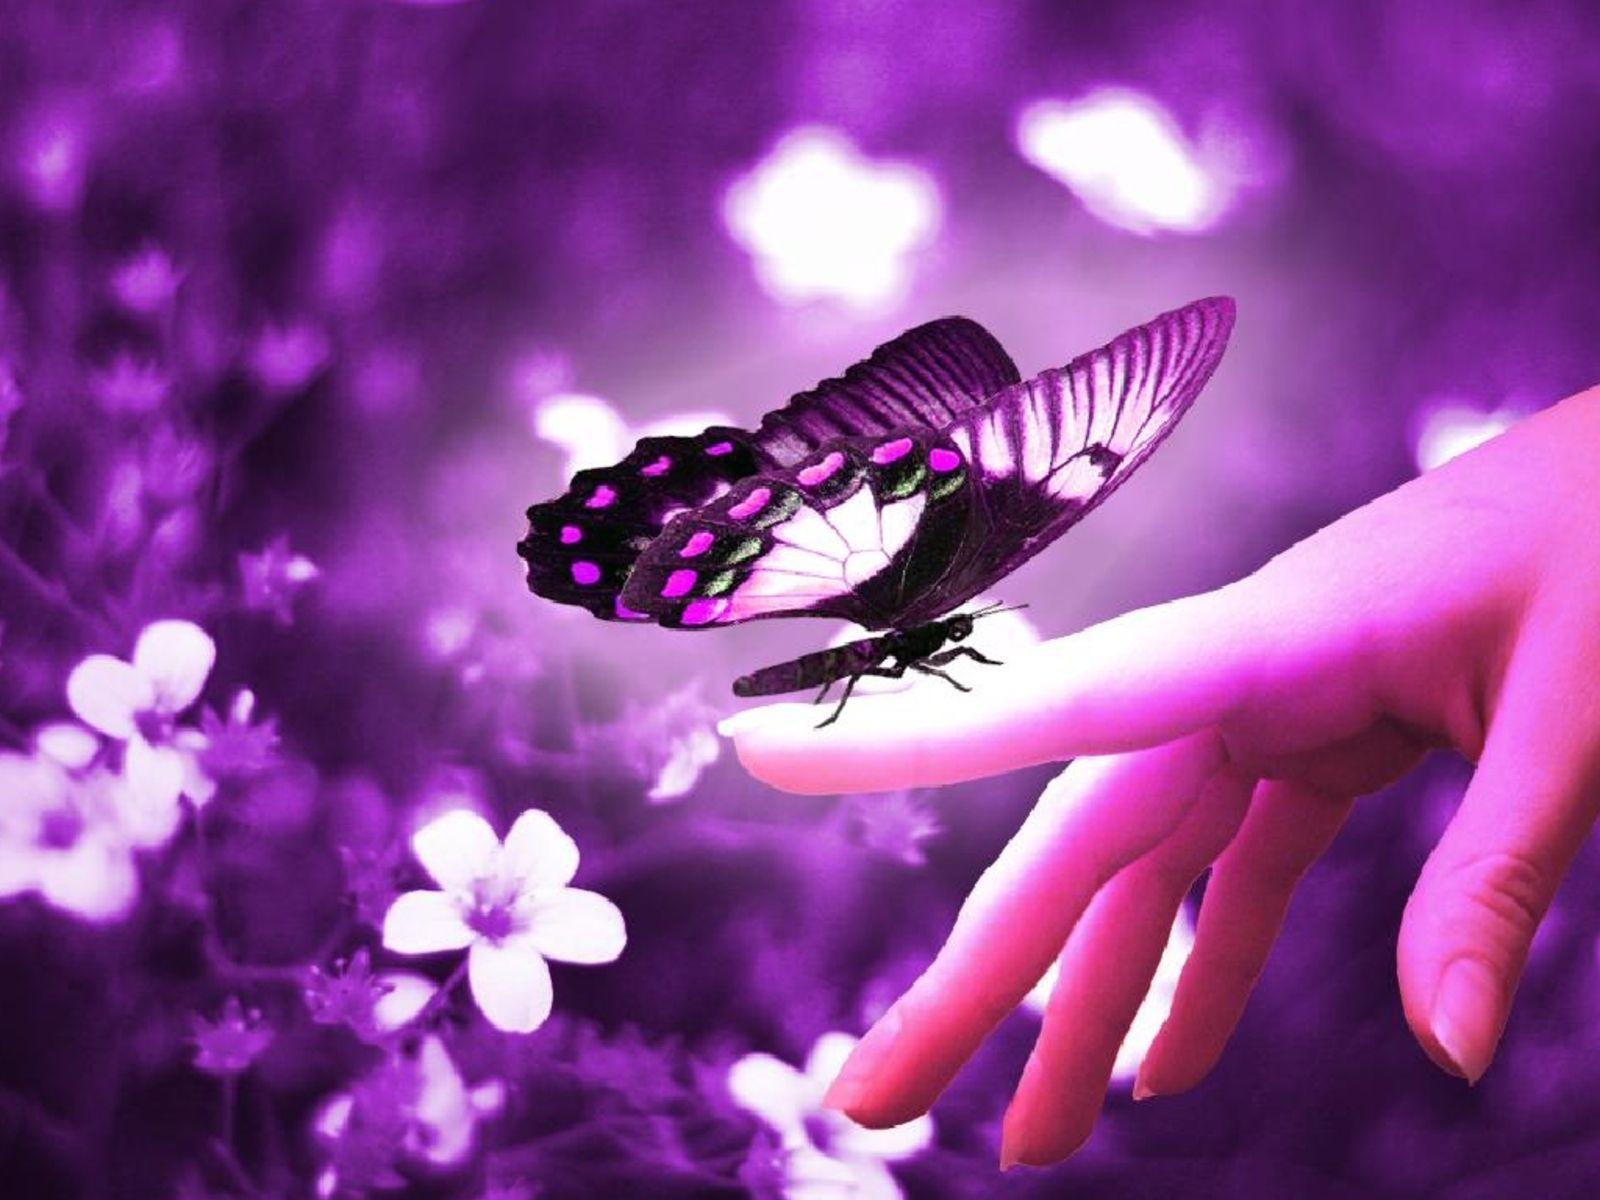 Cute Butterfly Wallpaper Best Desktop Image 4 Wallpaper